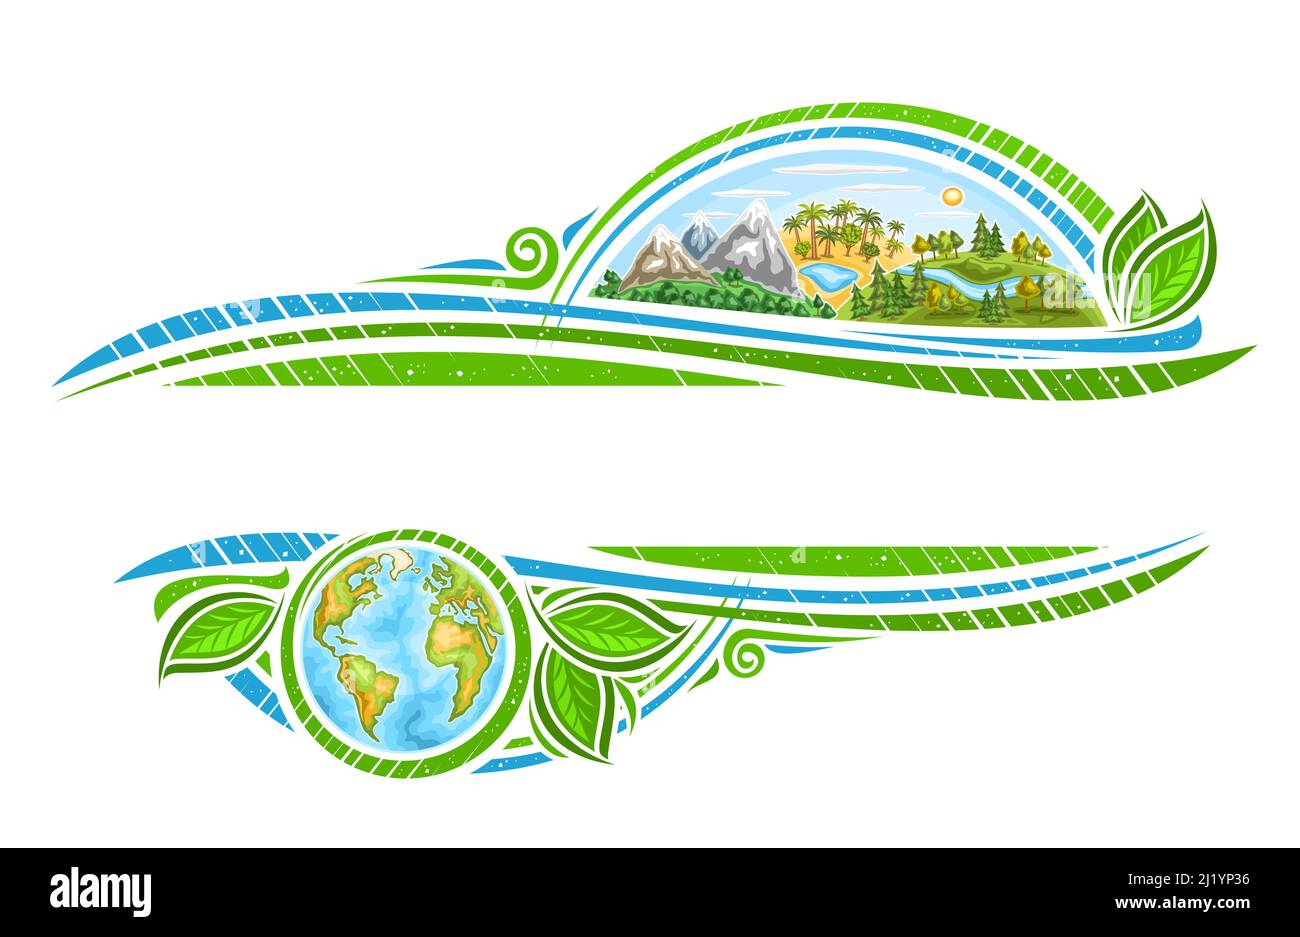 Vektor-Grenze für Earth Day Holiday mit Copyspace für Grußtext, dekorativer Rahmen mit Illustration von Berggebiet, afrika Palmen, Wald Stock Vektor